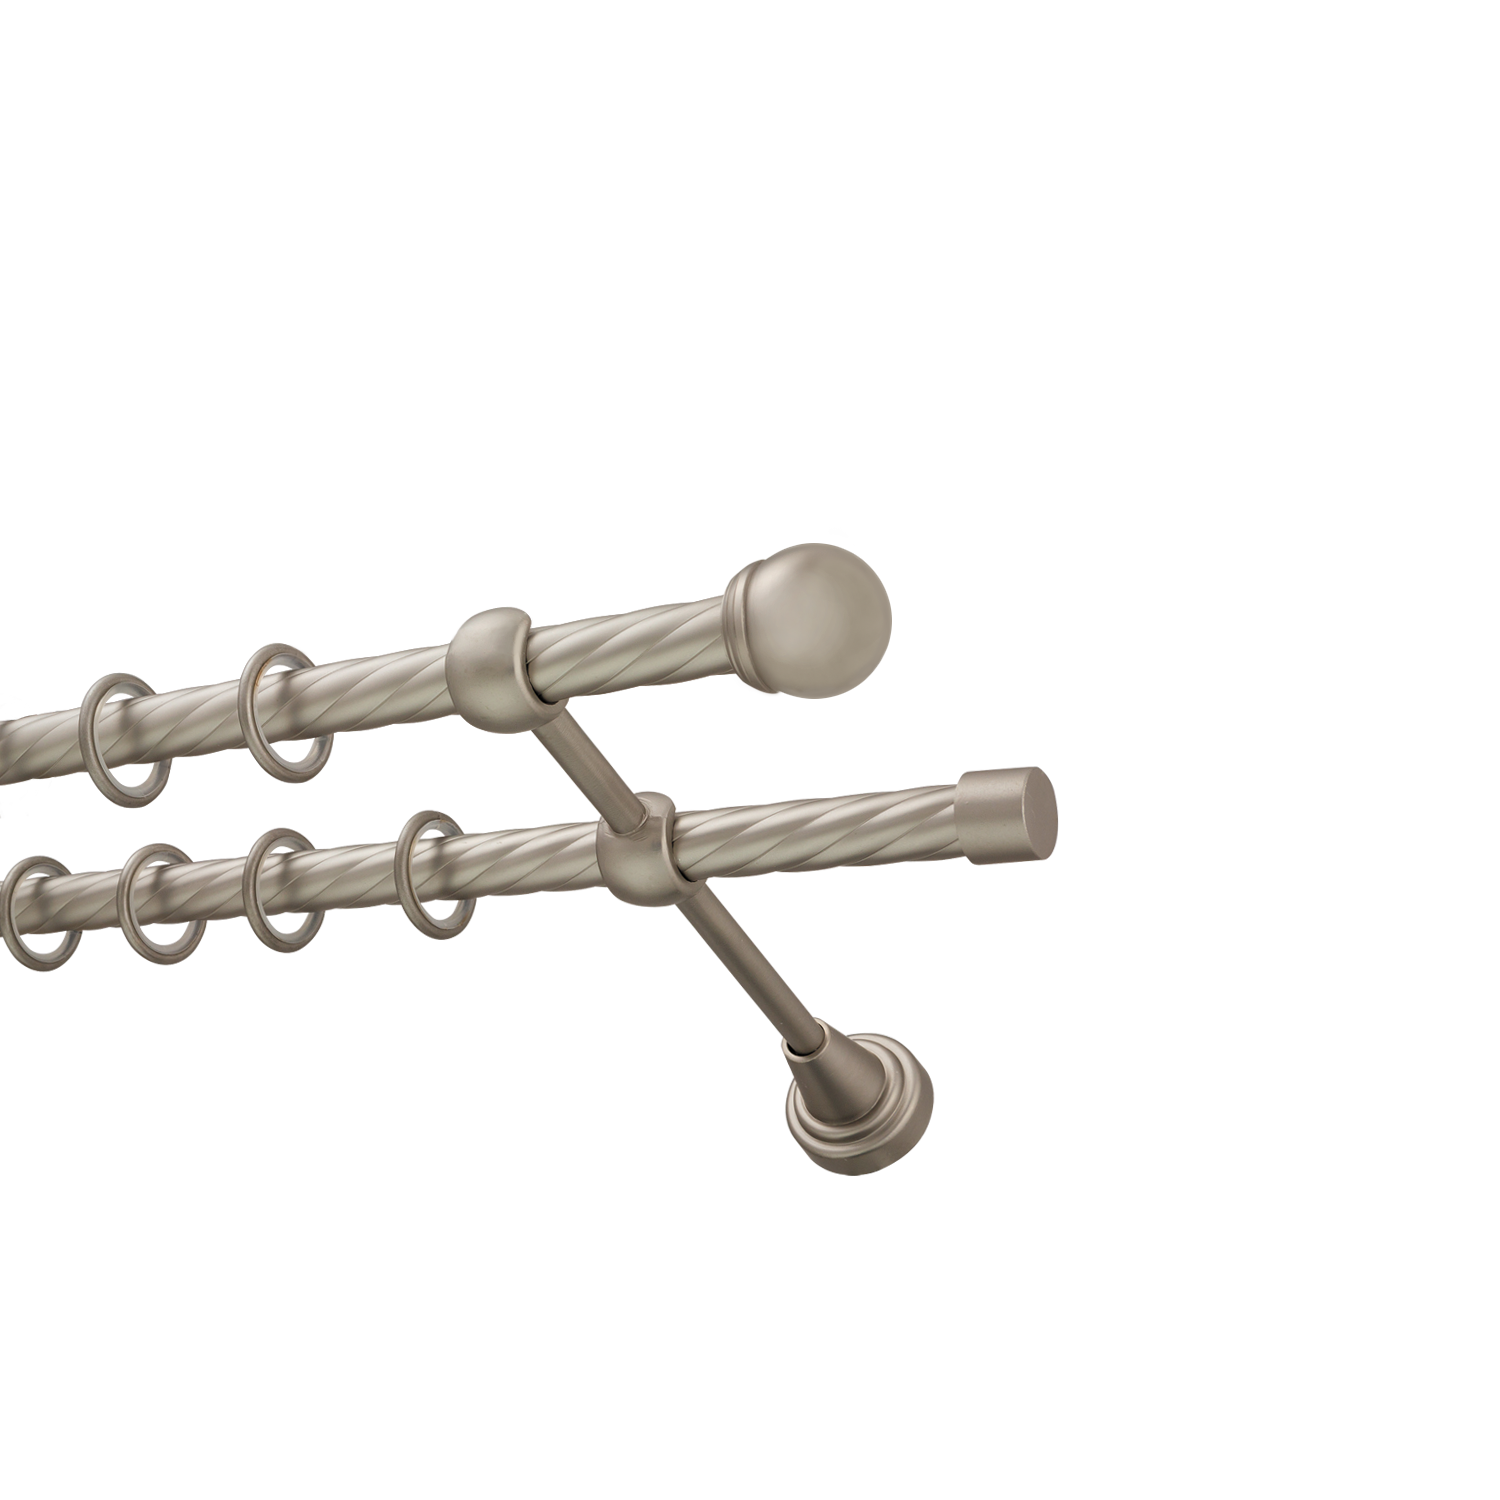 Металлический карниз для штор Вива, двухрядный 16/16 мм, сталь, витая штанга, длина 240 см